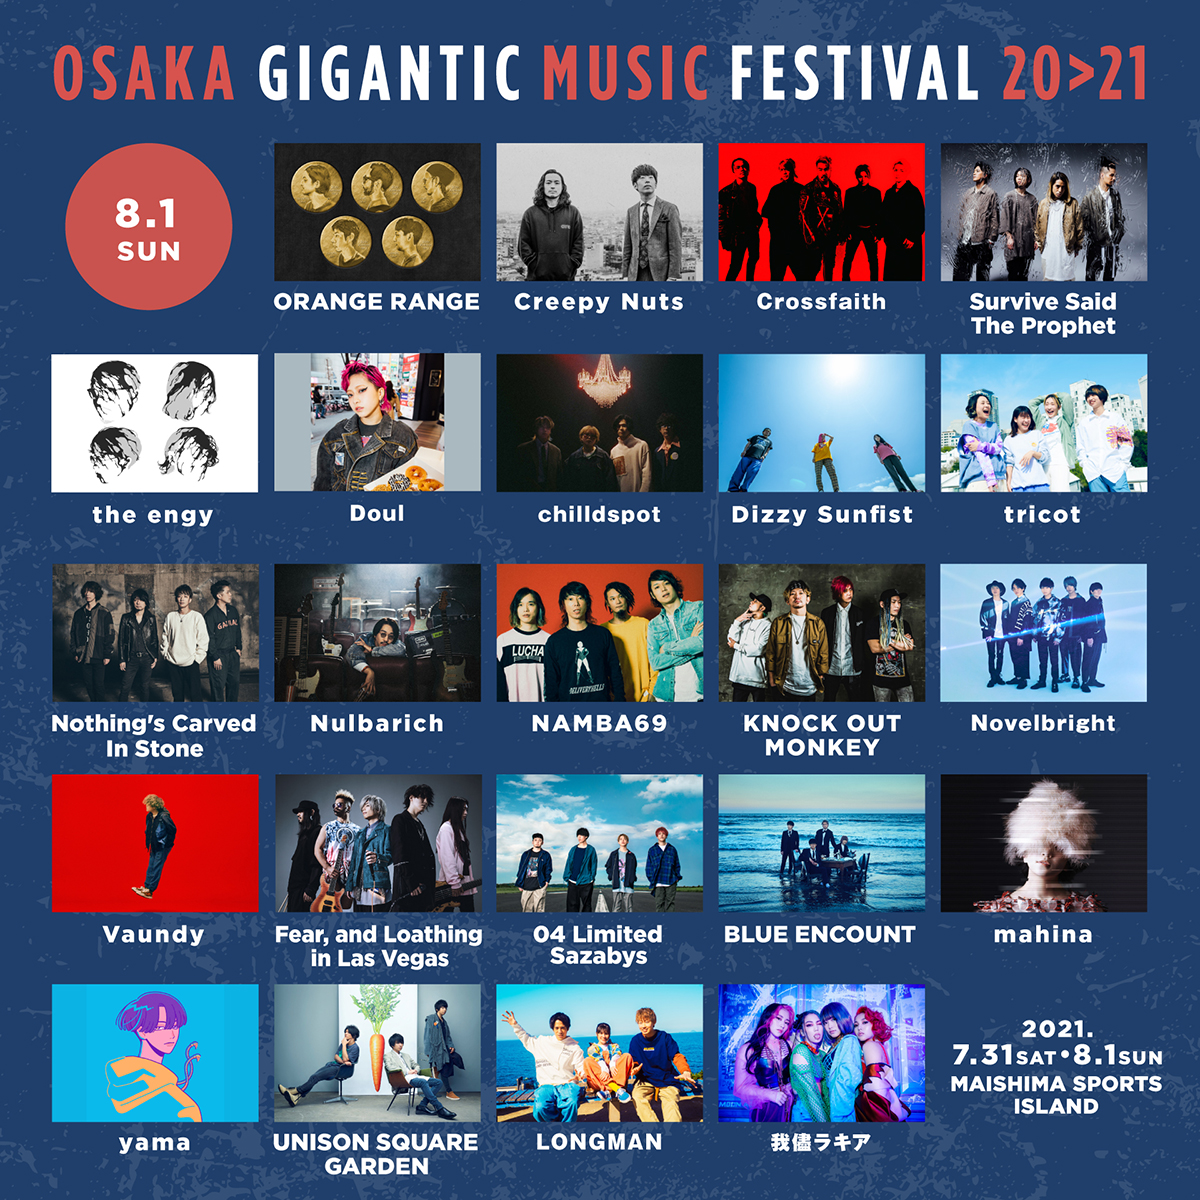 「OSAKA GIGANTIC MUSIC FESTIVAL 20>21